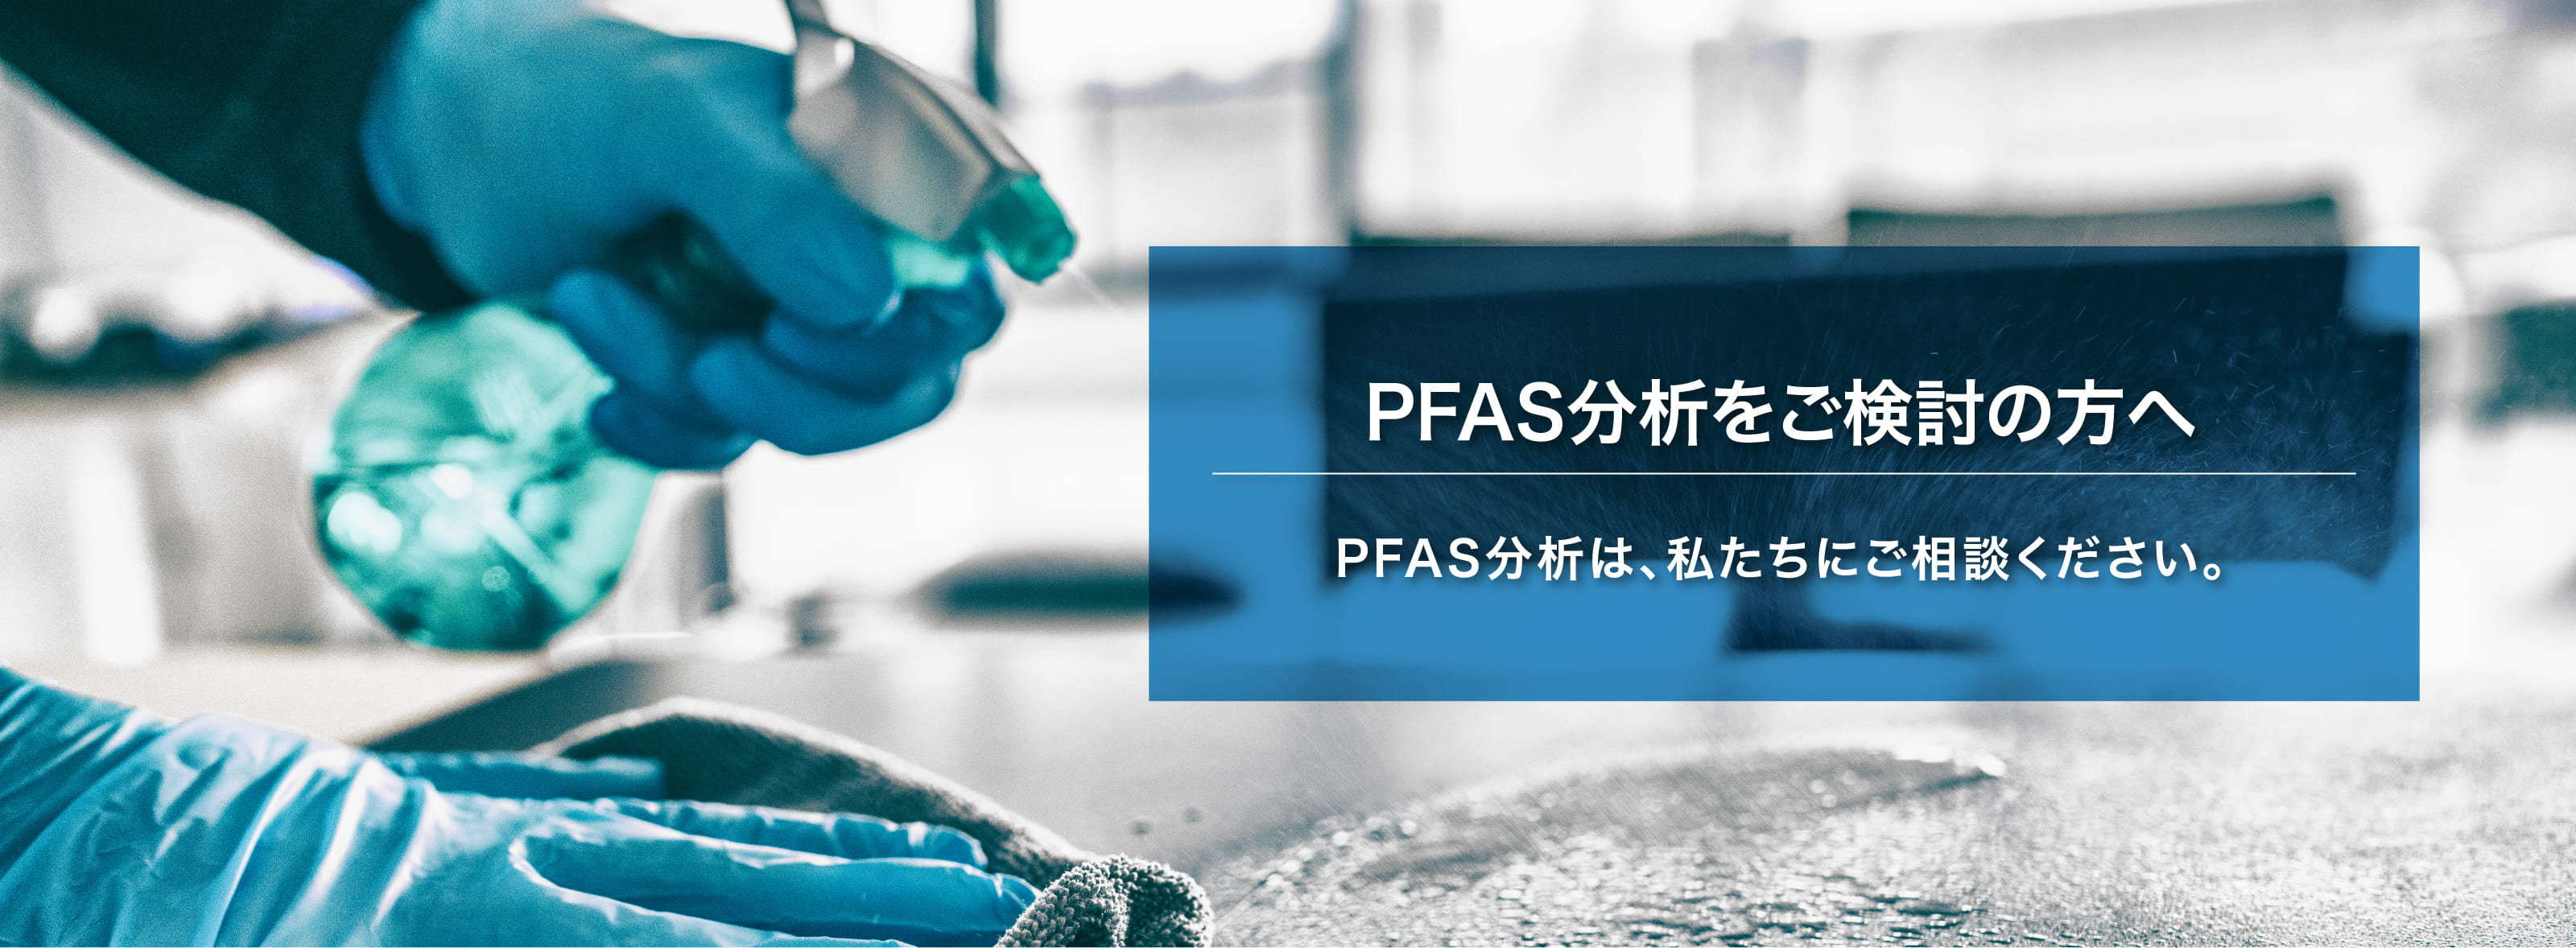 PFAS分析をご検討の方へ PFAS分析は、私たちにご相談ください。